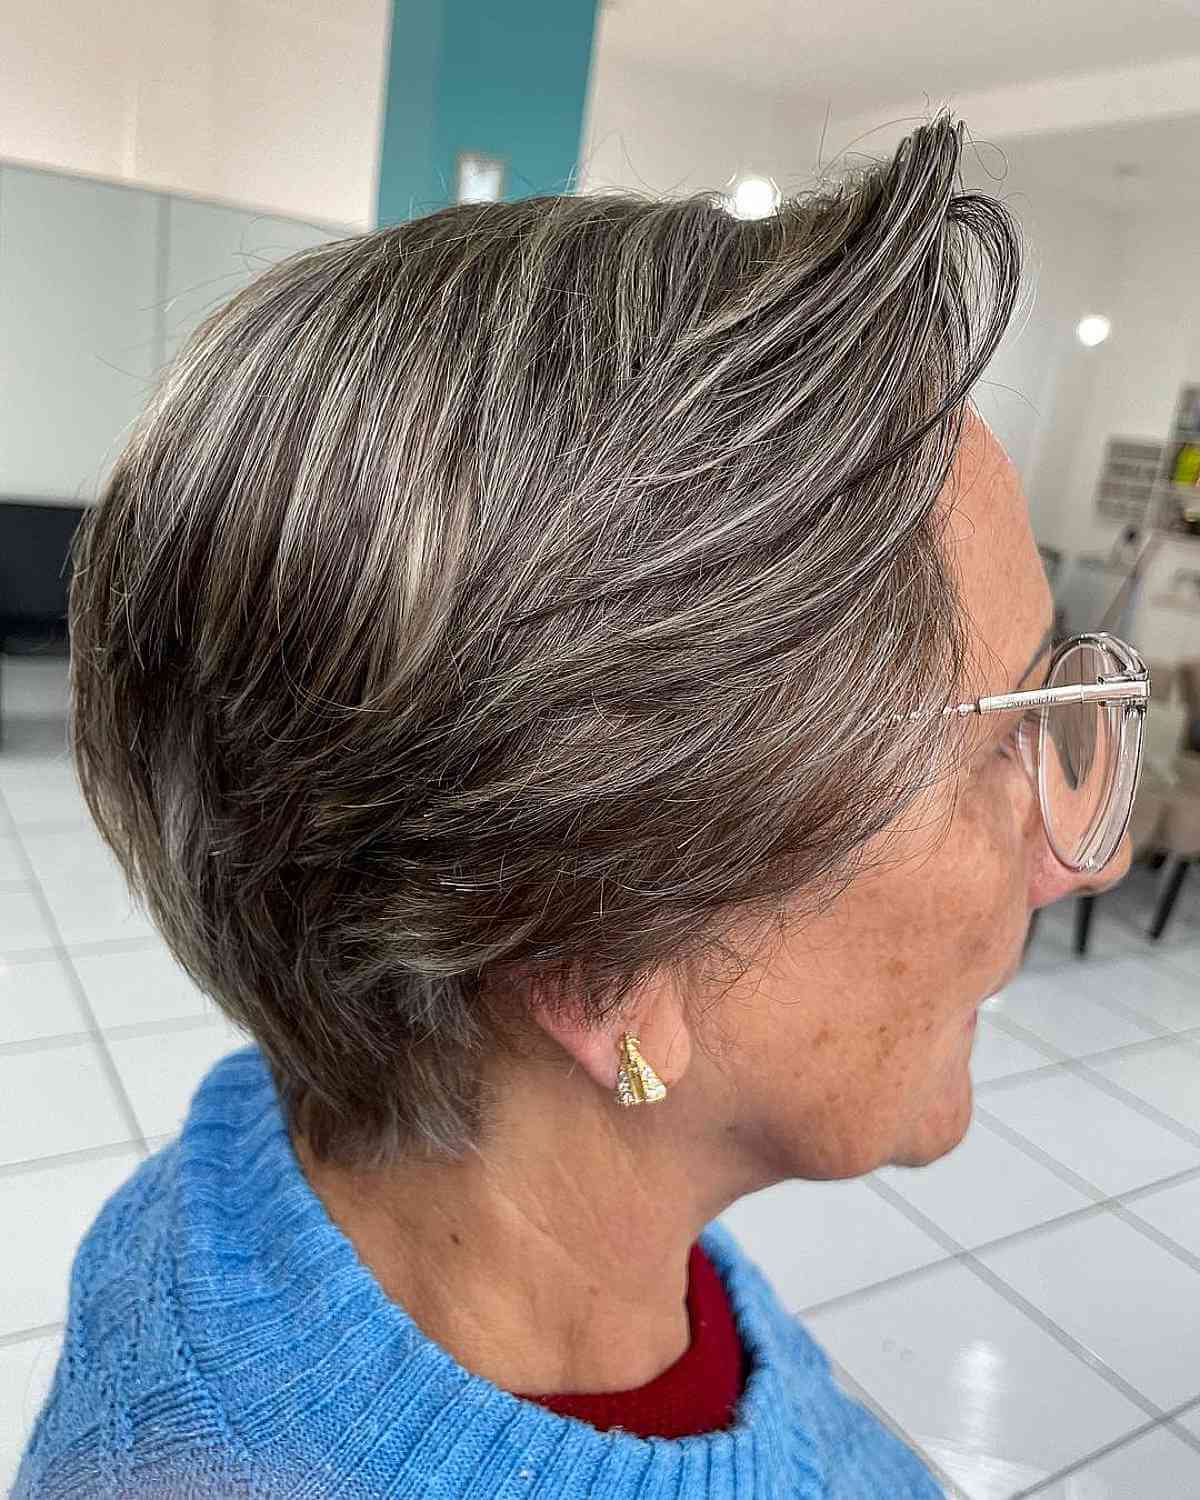 Wispy Pixie Cut sur les femmes aux cheveux fins dans la soixantaine